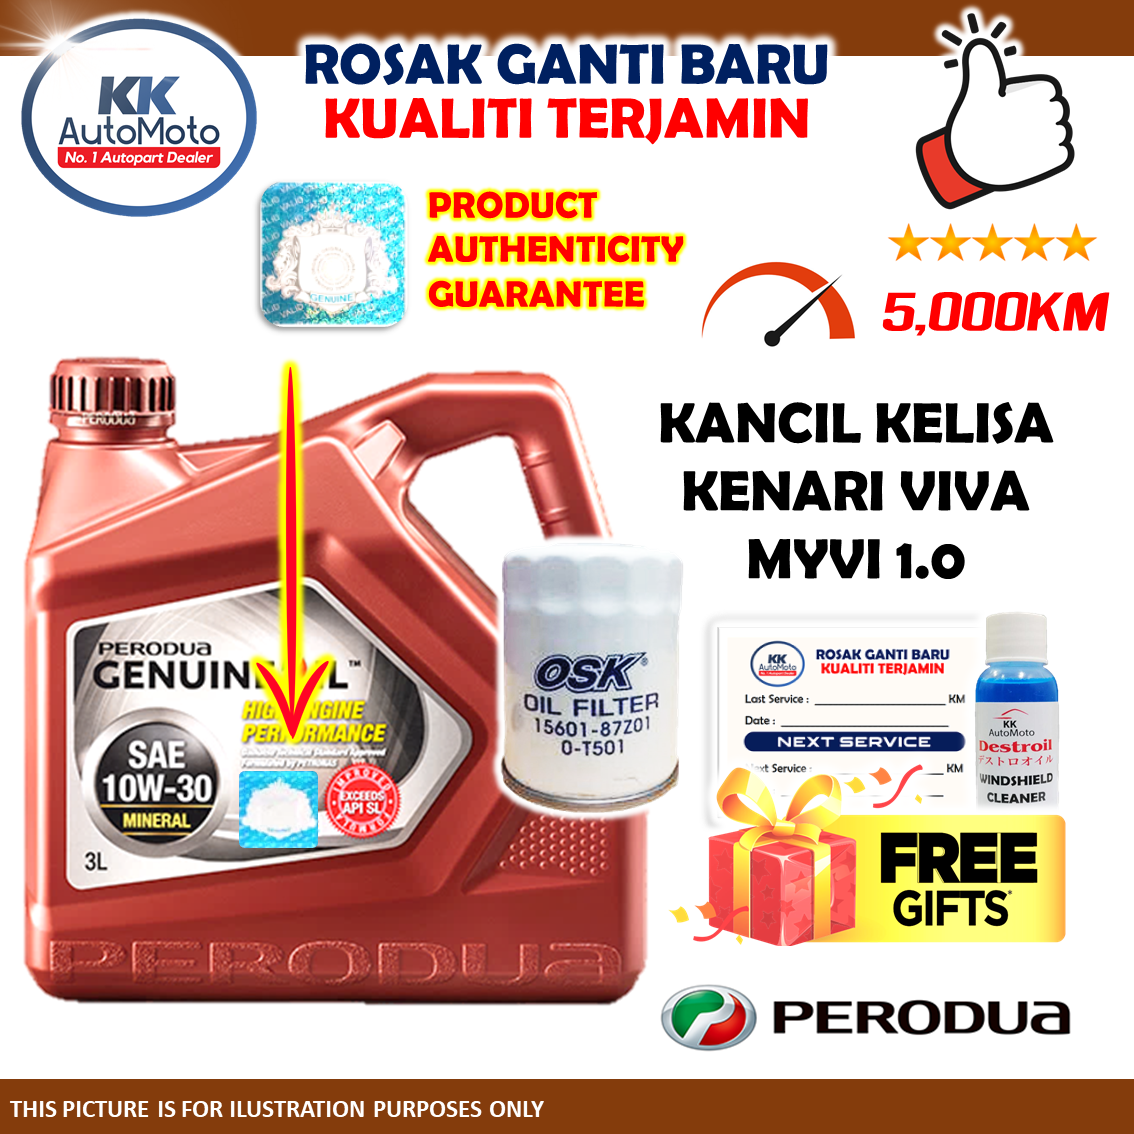 Perodua Kancil Kelisa Kenari Viva Myvi - Minyak Hitam Mineral 10W-30 10W30 10W 30 3L Engine Oil + OSK Oil Filter O-T501